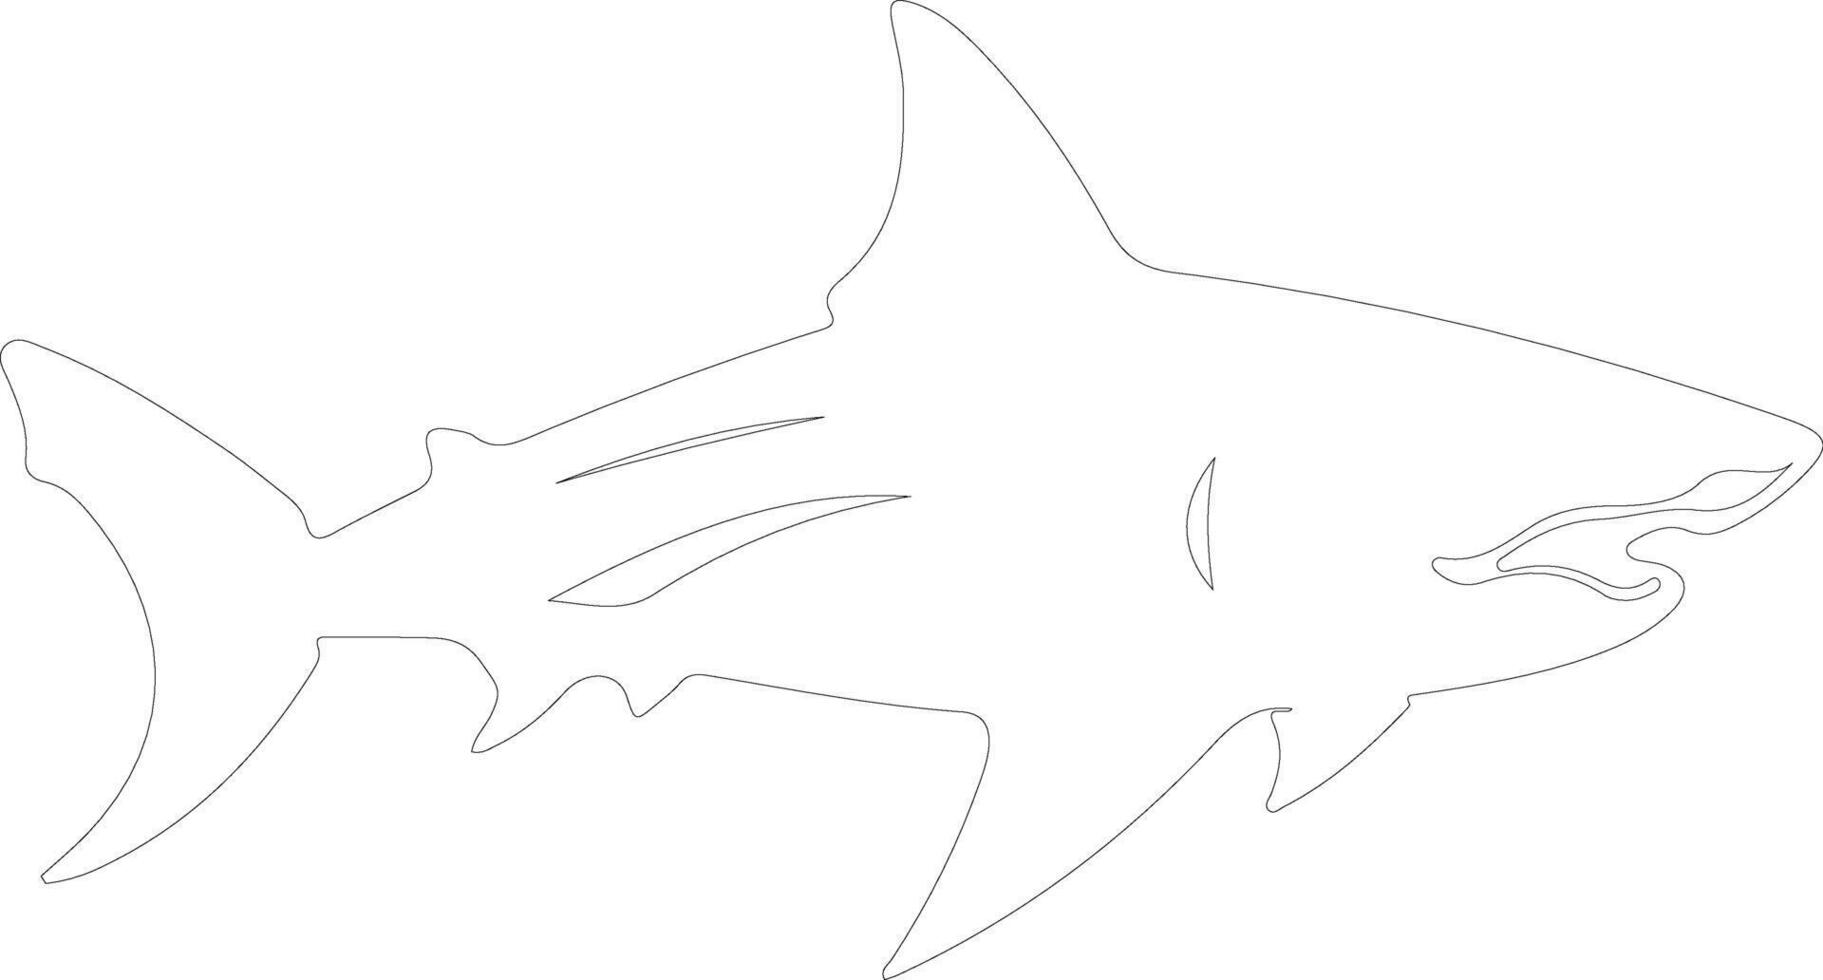 bullshark outline silhouette vector